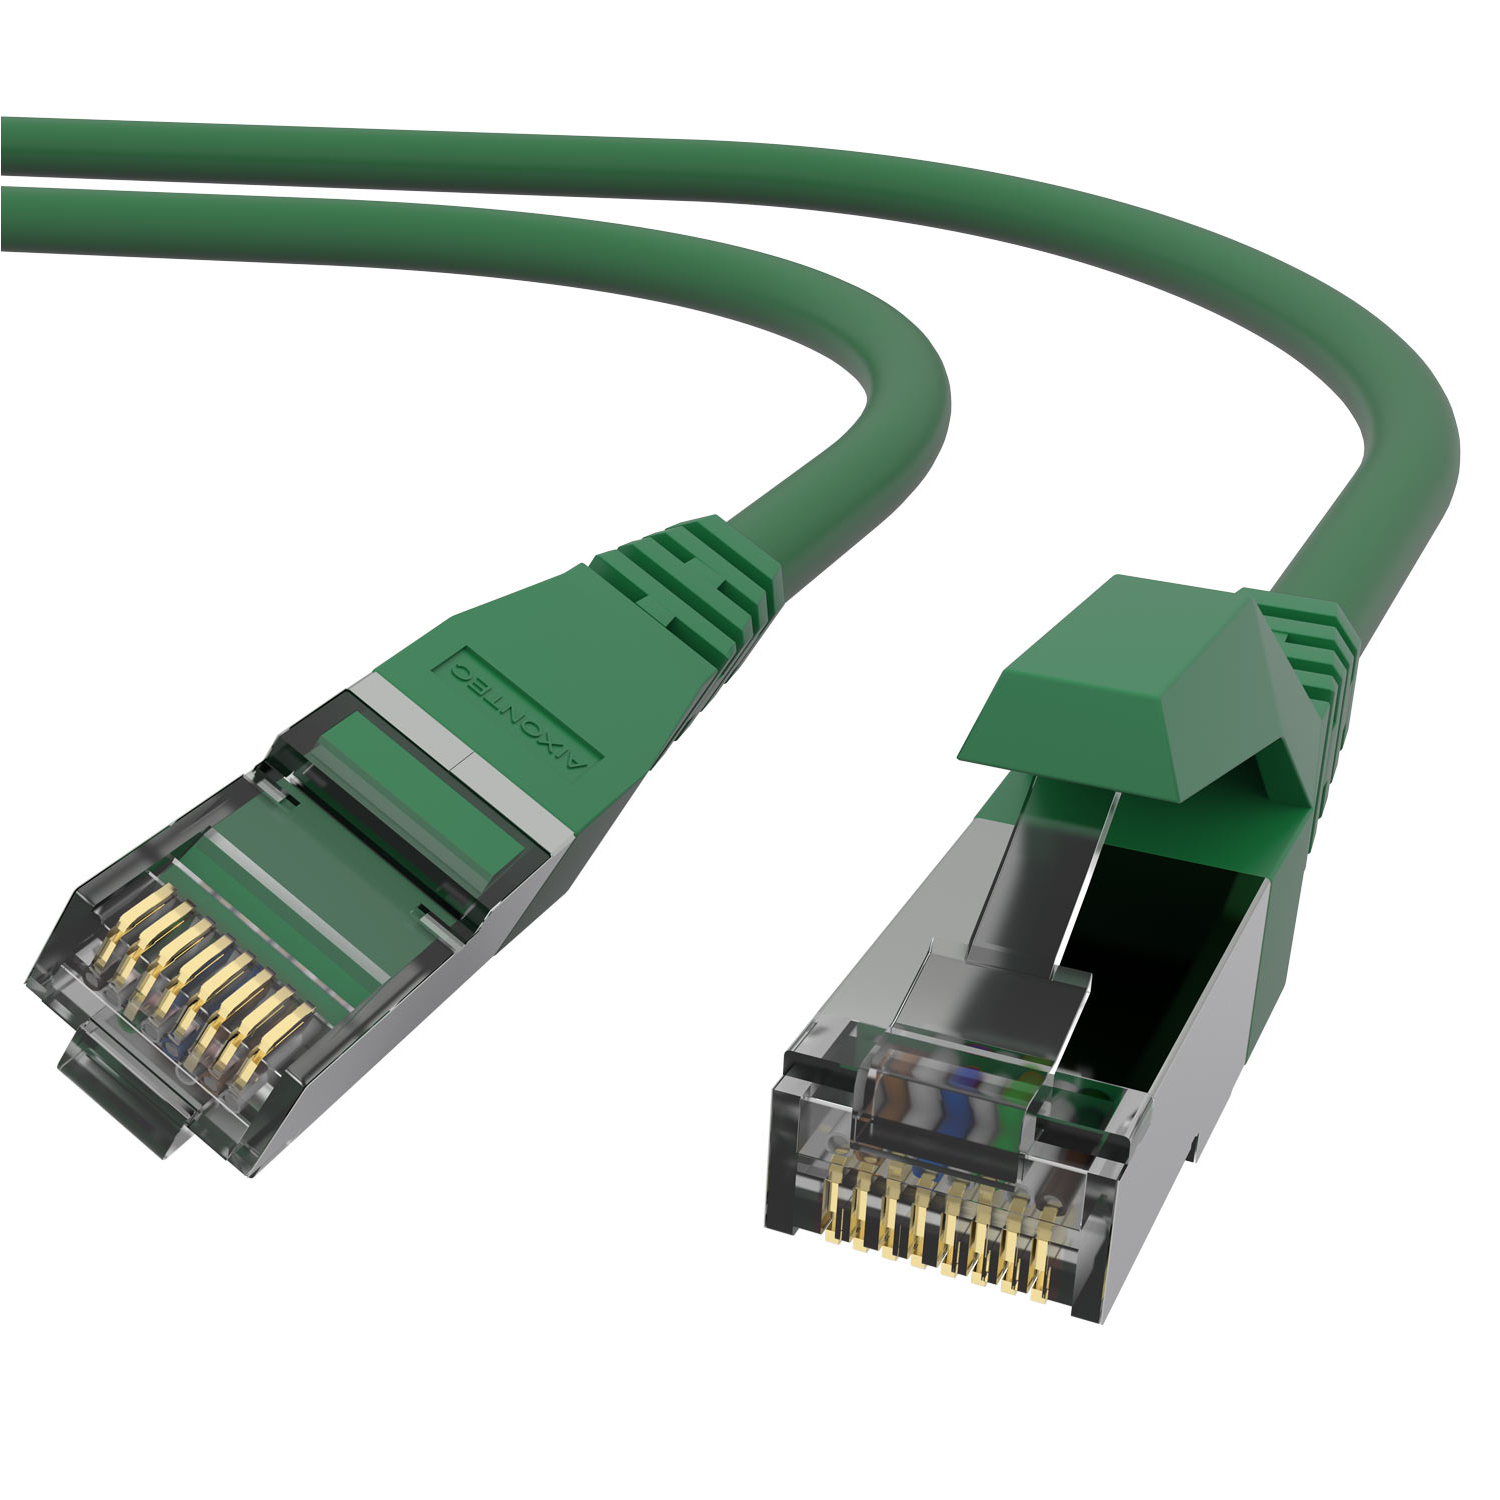 AIXONTEC 1,0m Cat.6 RJ45 Lankabel 10 Patchkabel Gigabit, Ethernetkabel 1,0 m Netzwerkkabel